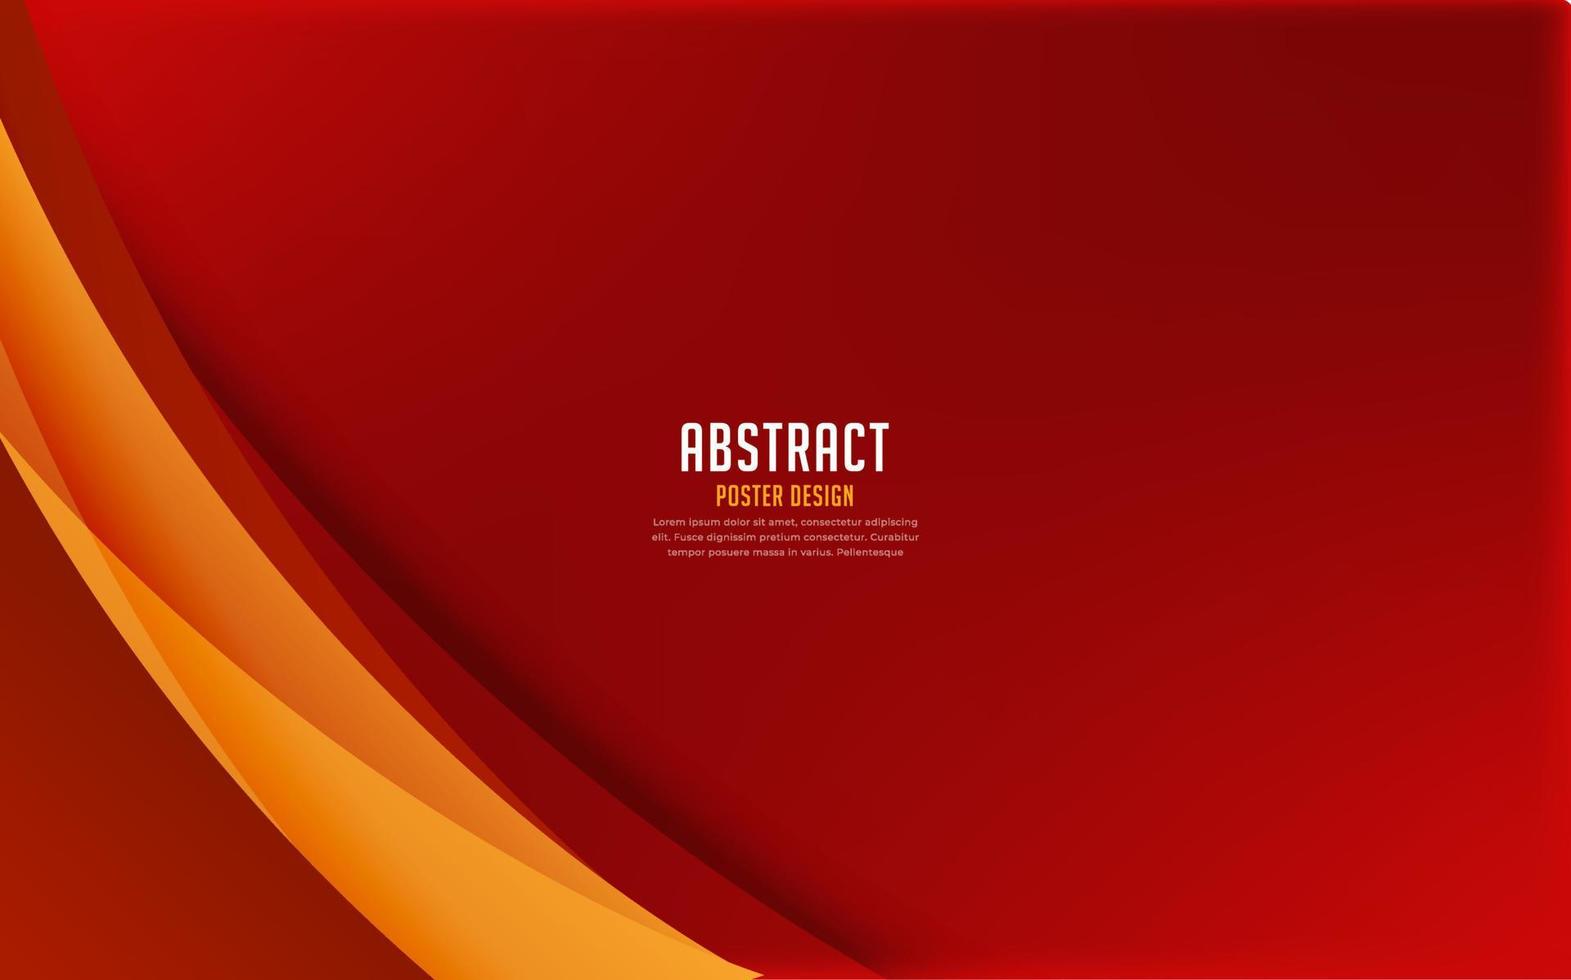 nuevo fondo de diseño de onda de degradado rojo. elegante vector de fondo abstracto de onda roja.